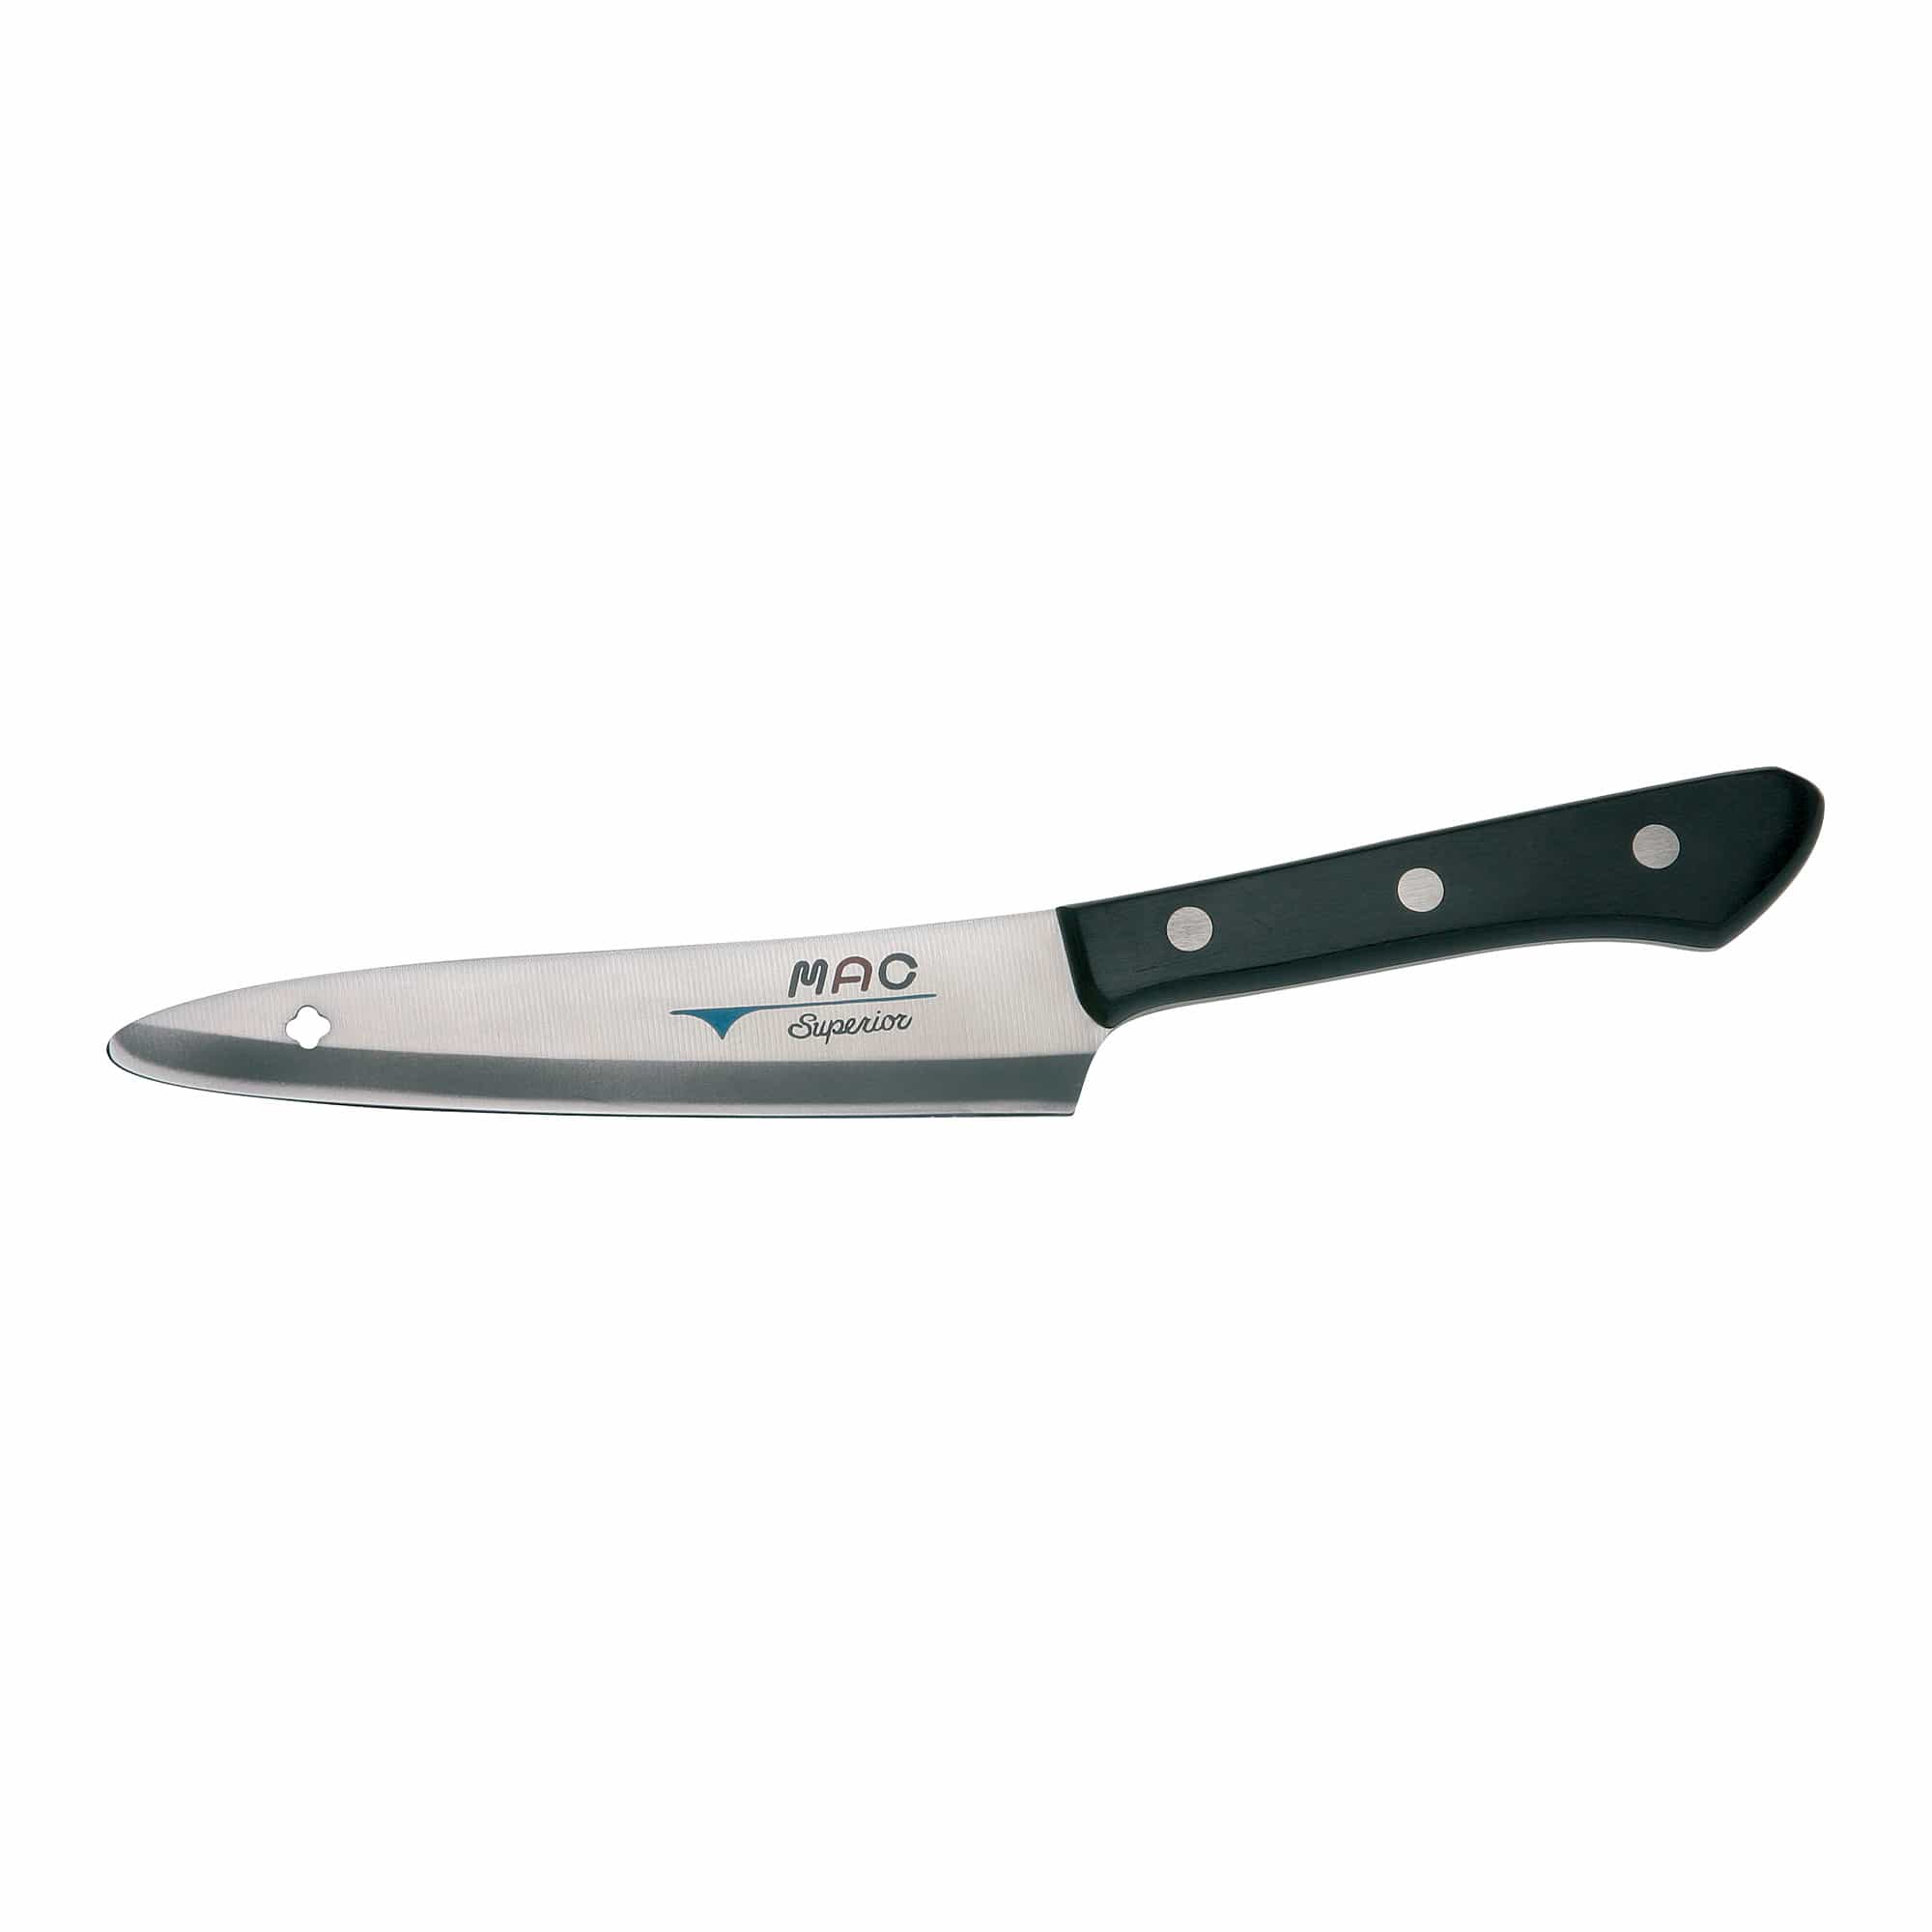 Superior - Grönsakskniv, 12,5 cm